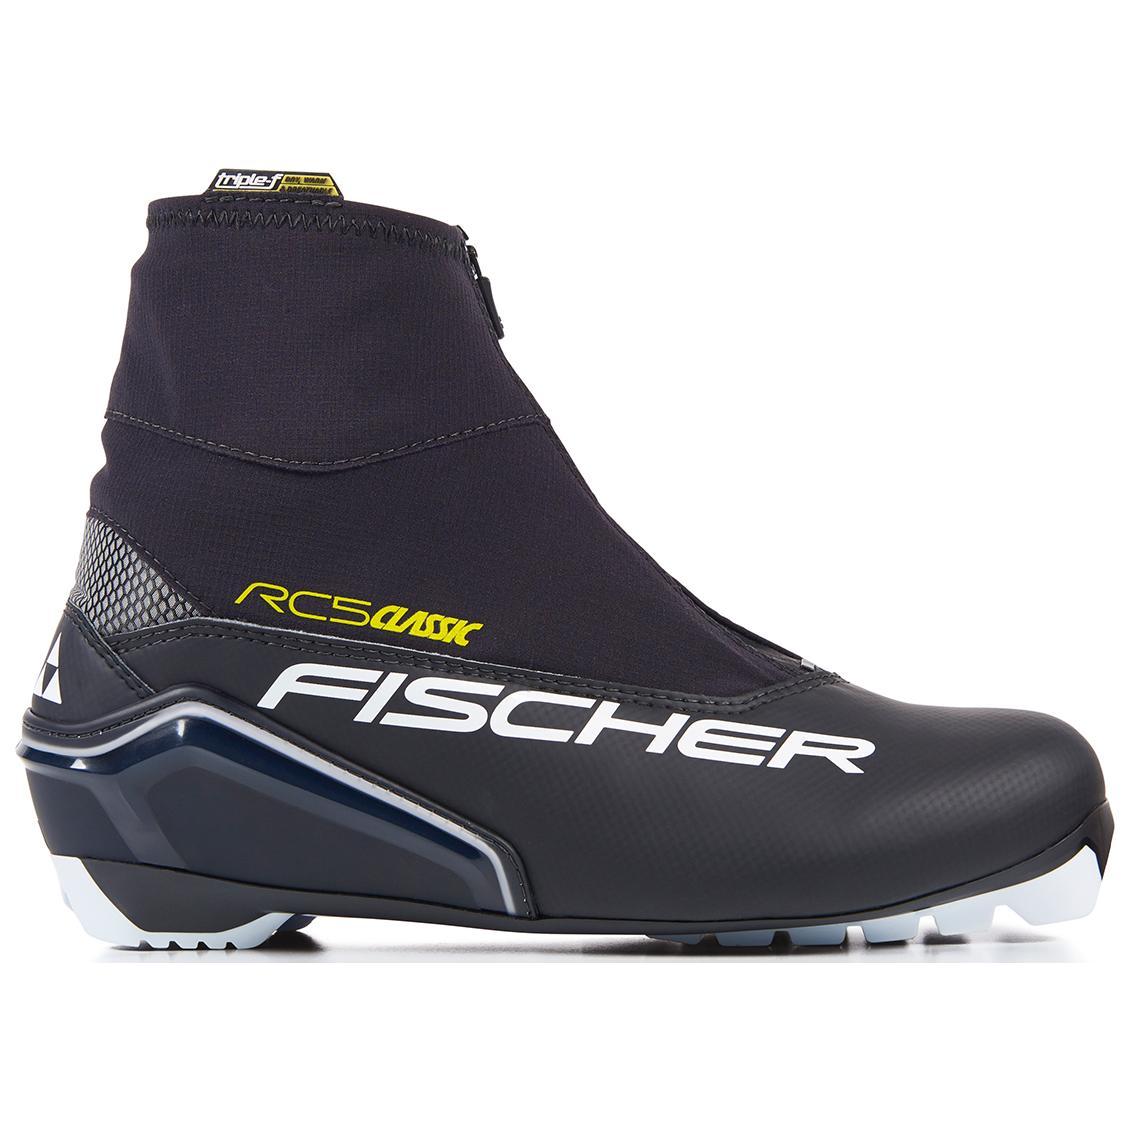 Лыжные ботинки Fischer 2018-19 RC5 Classic